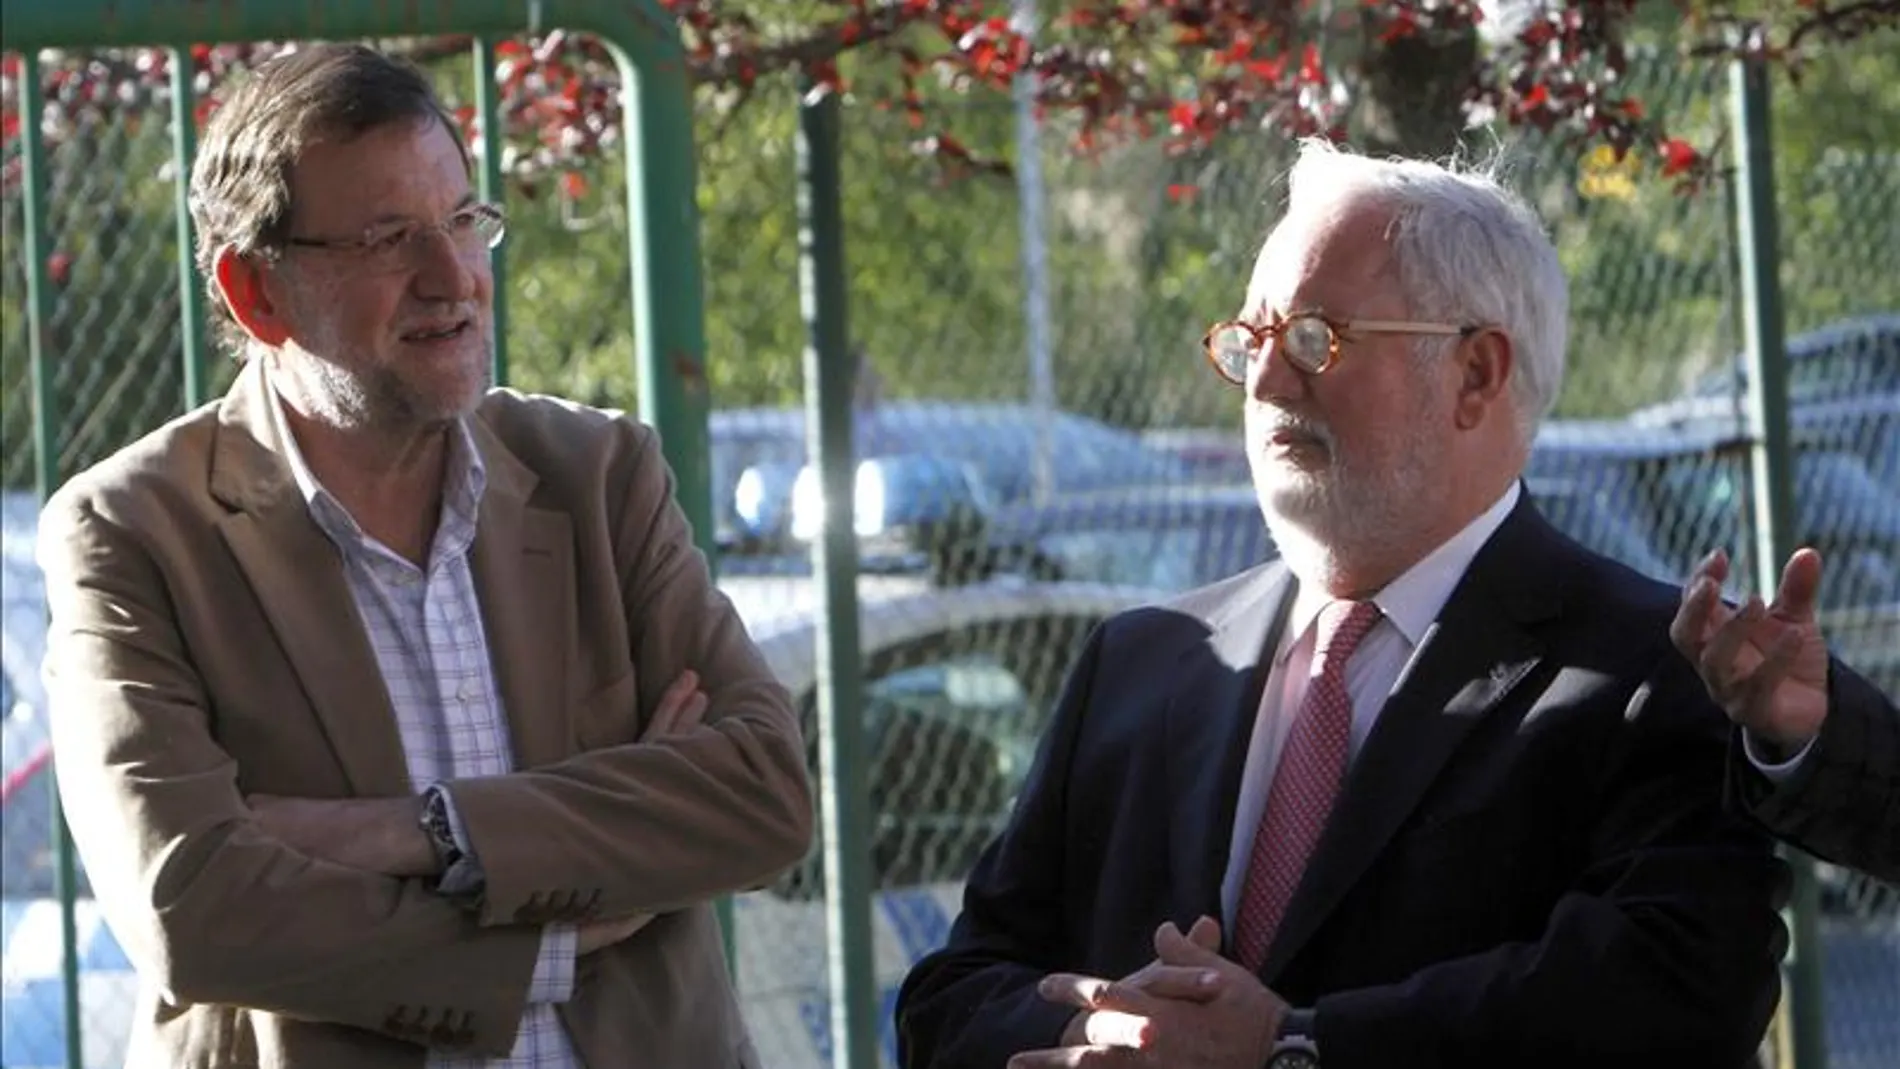 Mariano Rajoy y Arias Cañete en Lalín, Pontevedra